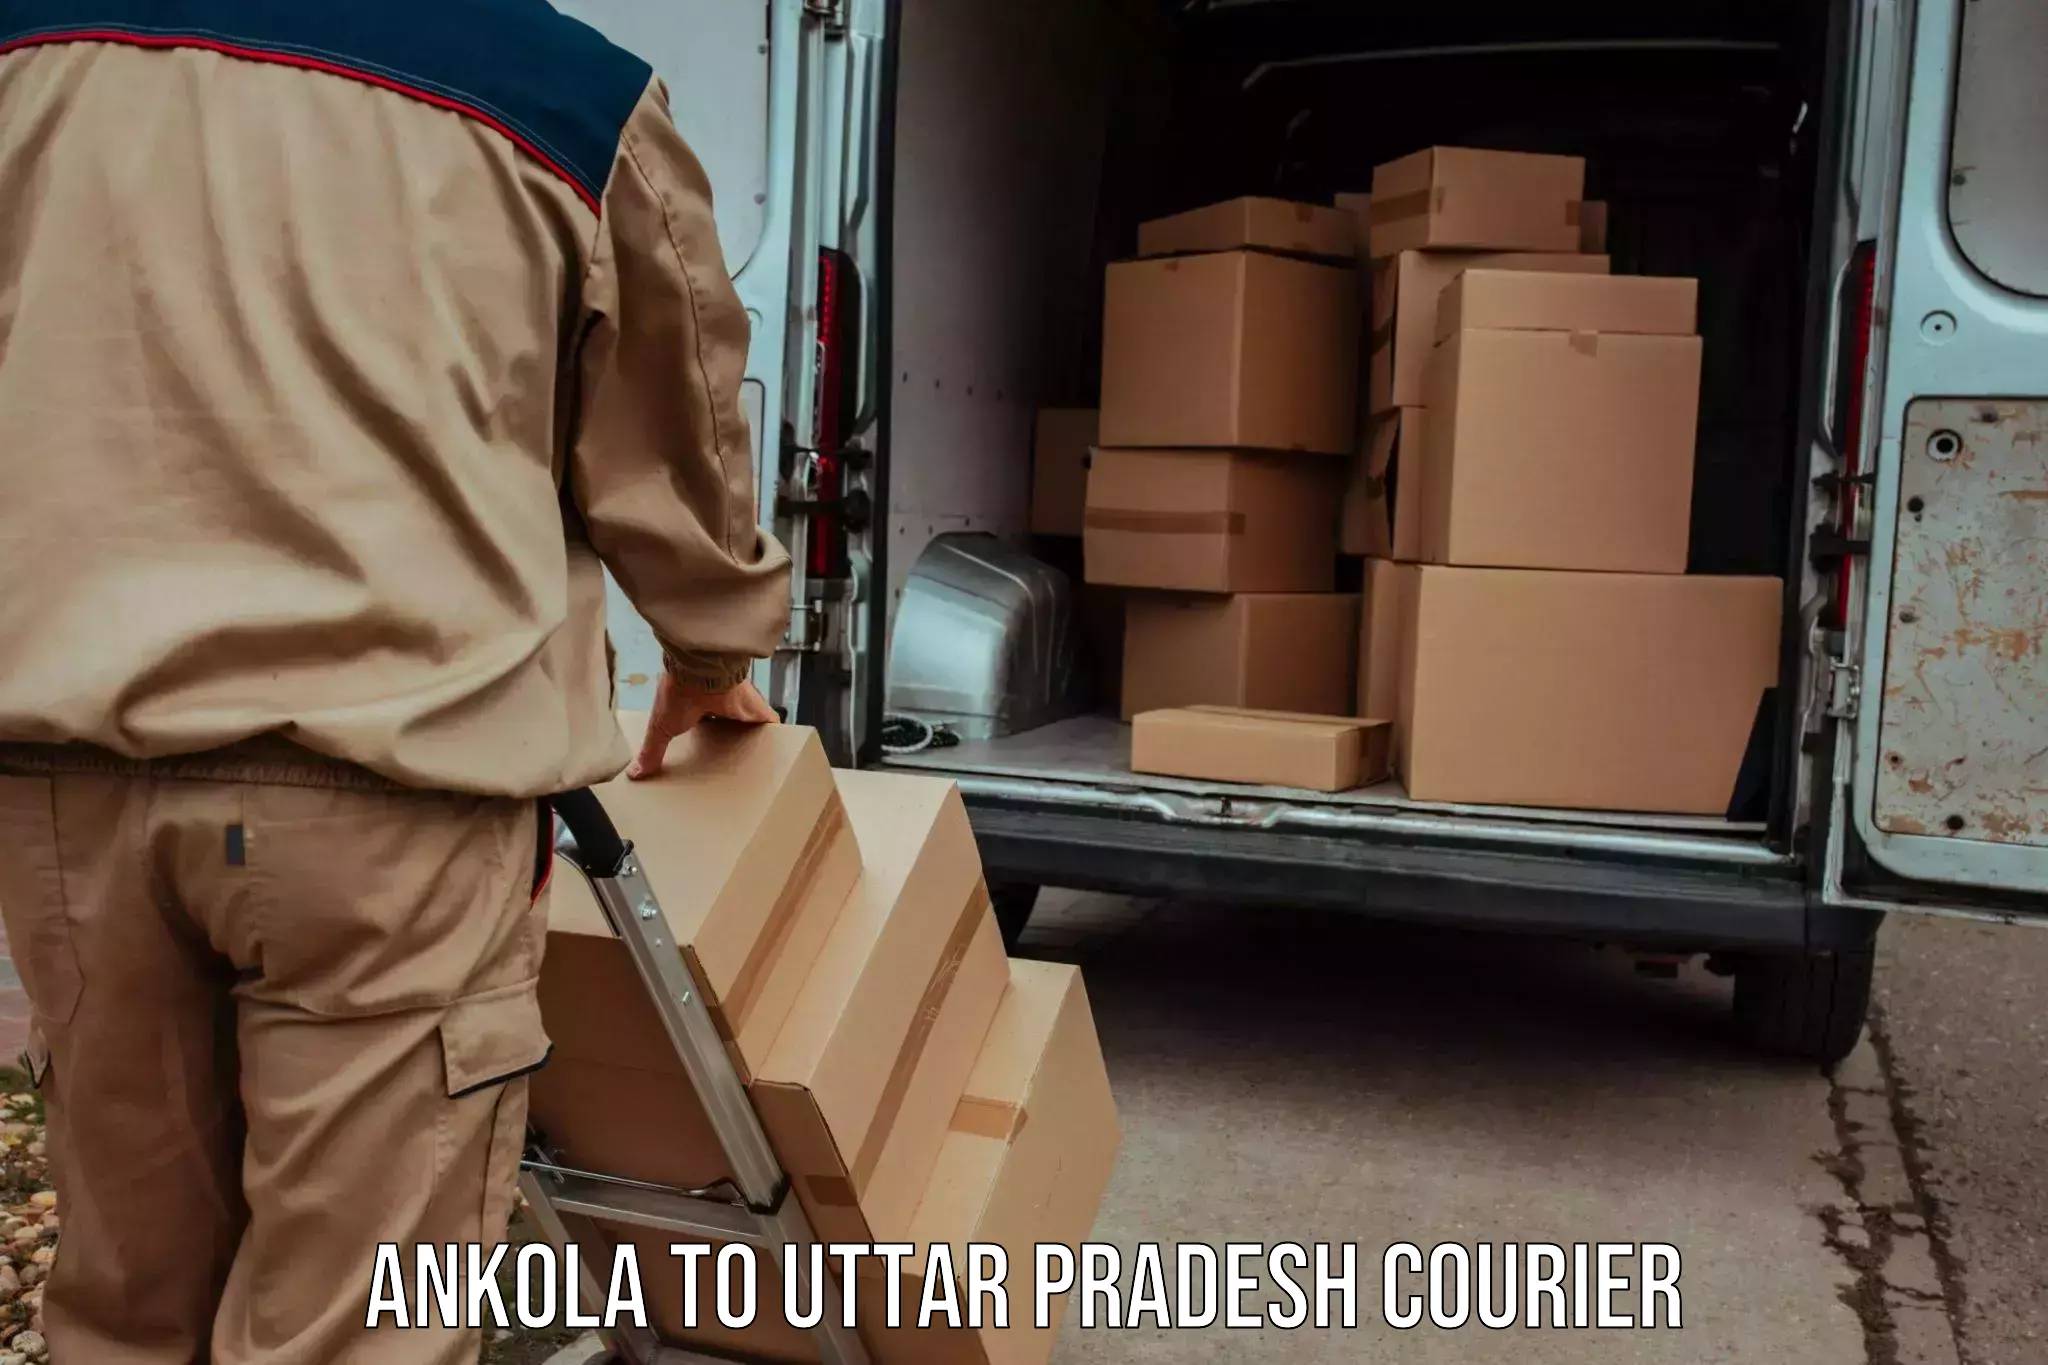 Modern courier technology Ankola to Harraiya